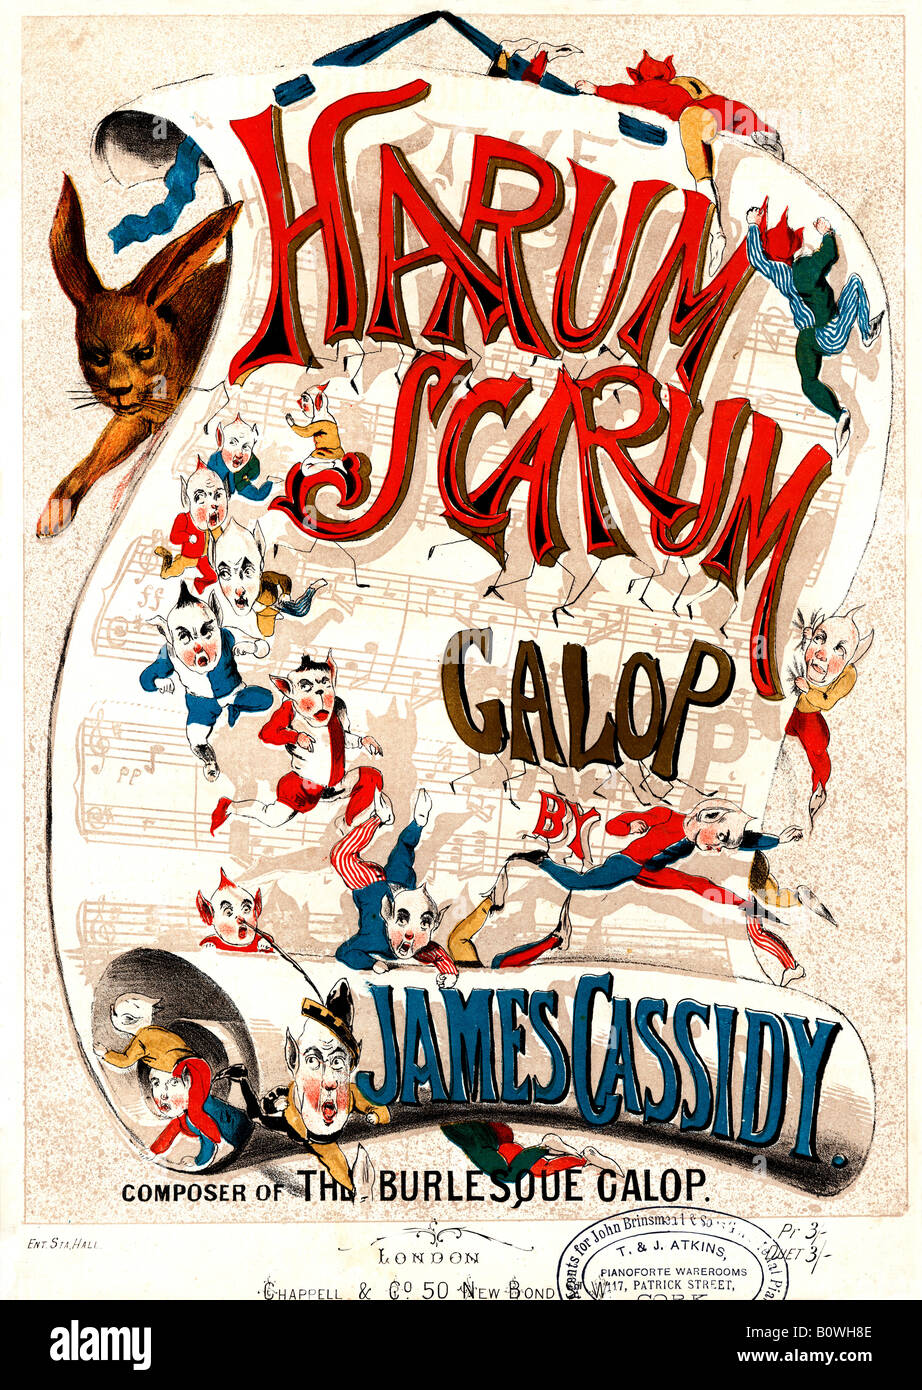 Harum Scarum Galop viktorianischen illustrierte Musik Blatt Abdeckung für Dance-Musik von James Cassidy Stockfoto